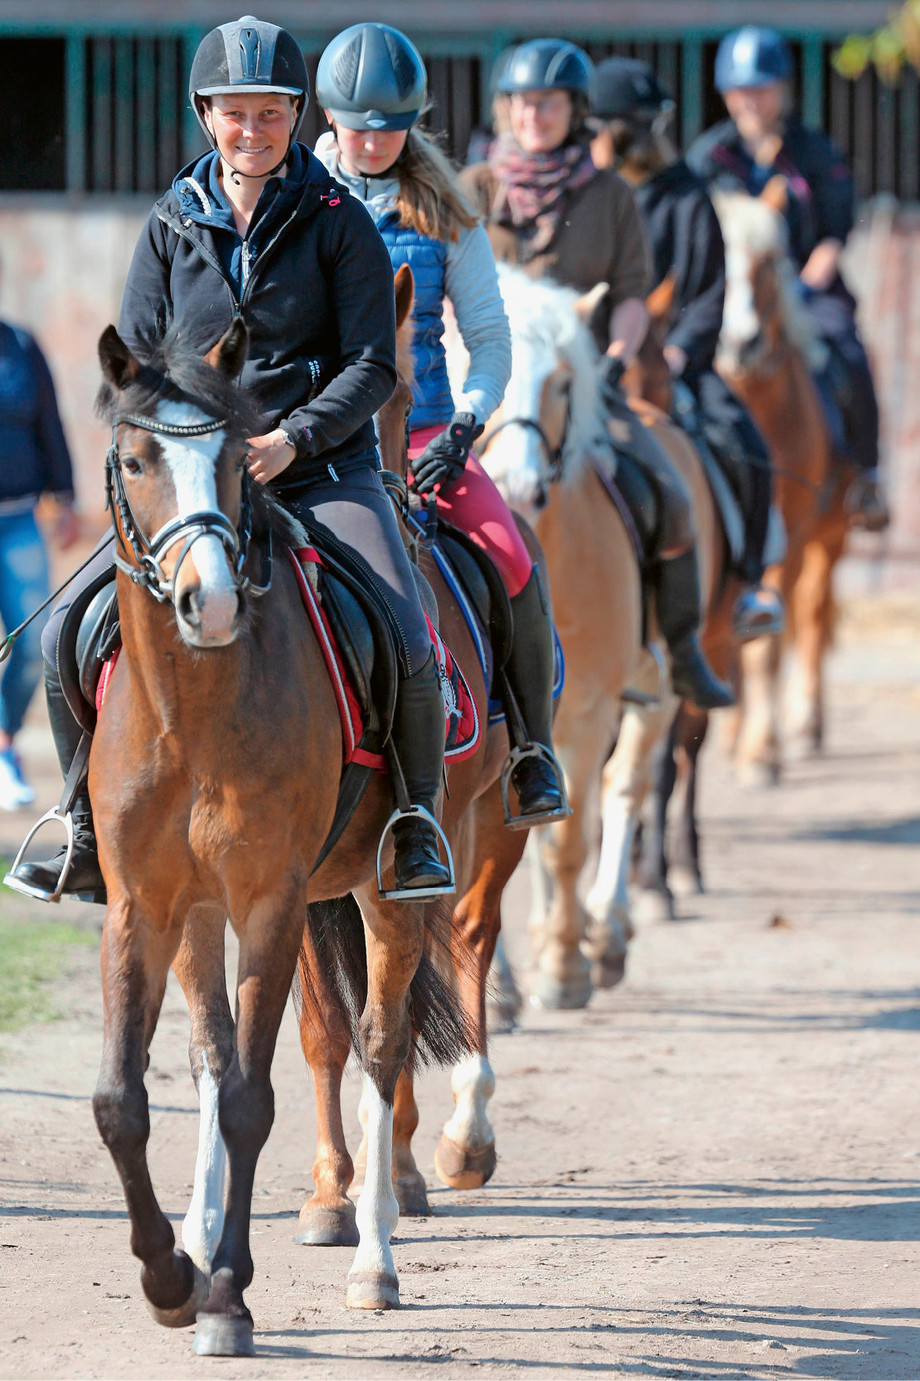 Nul besoin d’être cavalier de Saut pour enseigner les bases de l’équitation aux jeunes. (Photo: IMAGO / Frank Sorge)